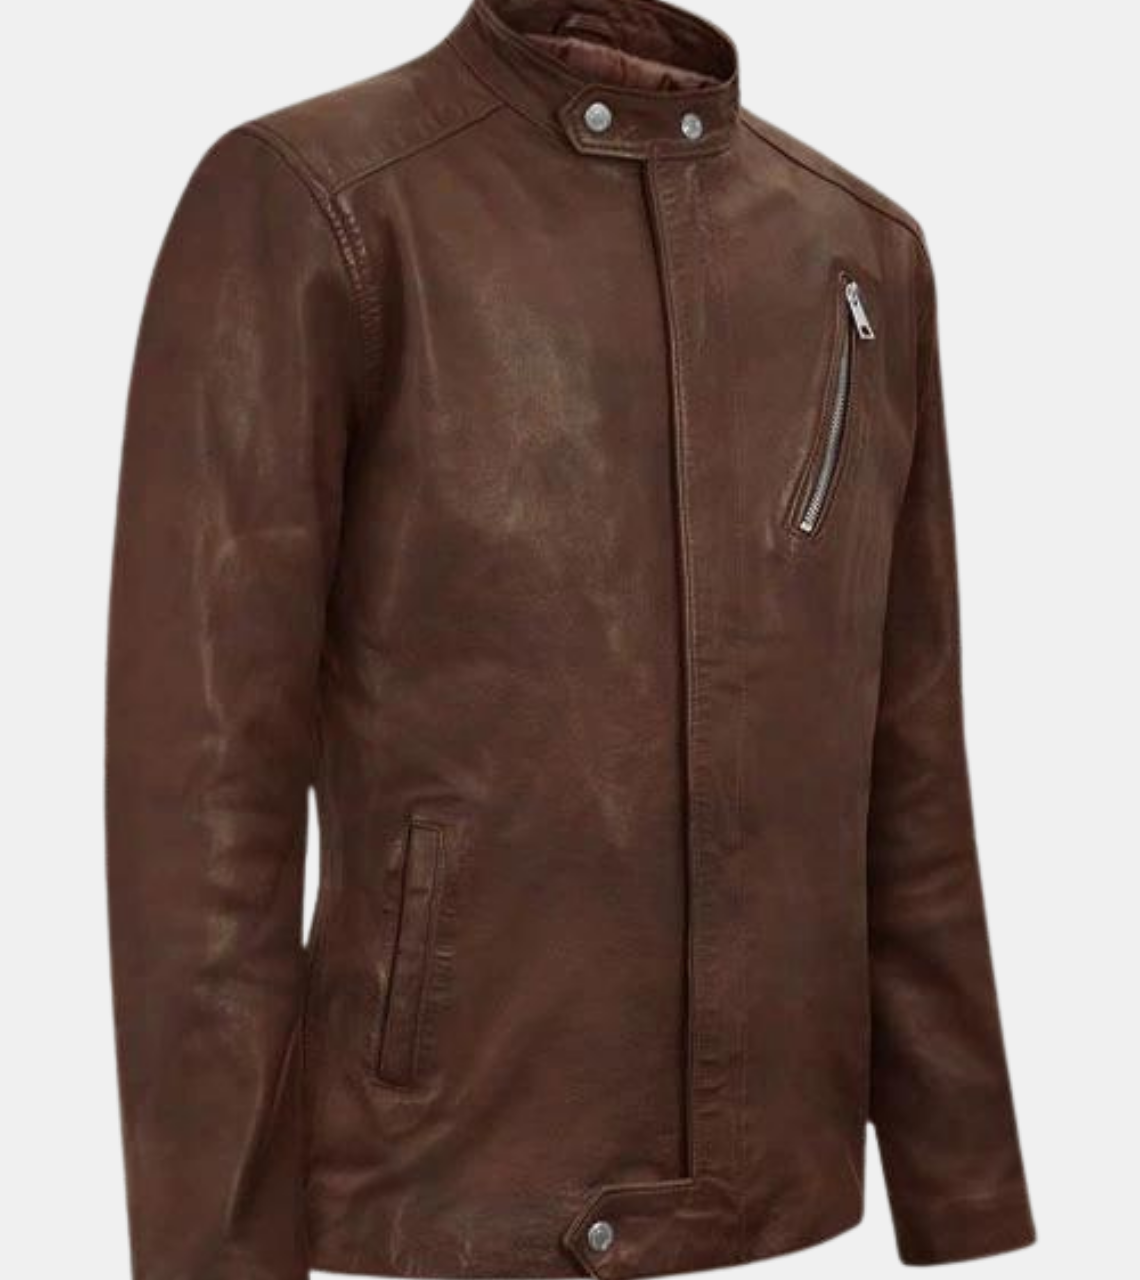  Bronze Biker's Leather Jacket